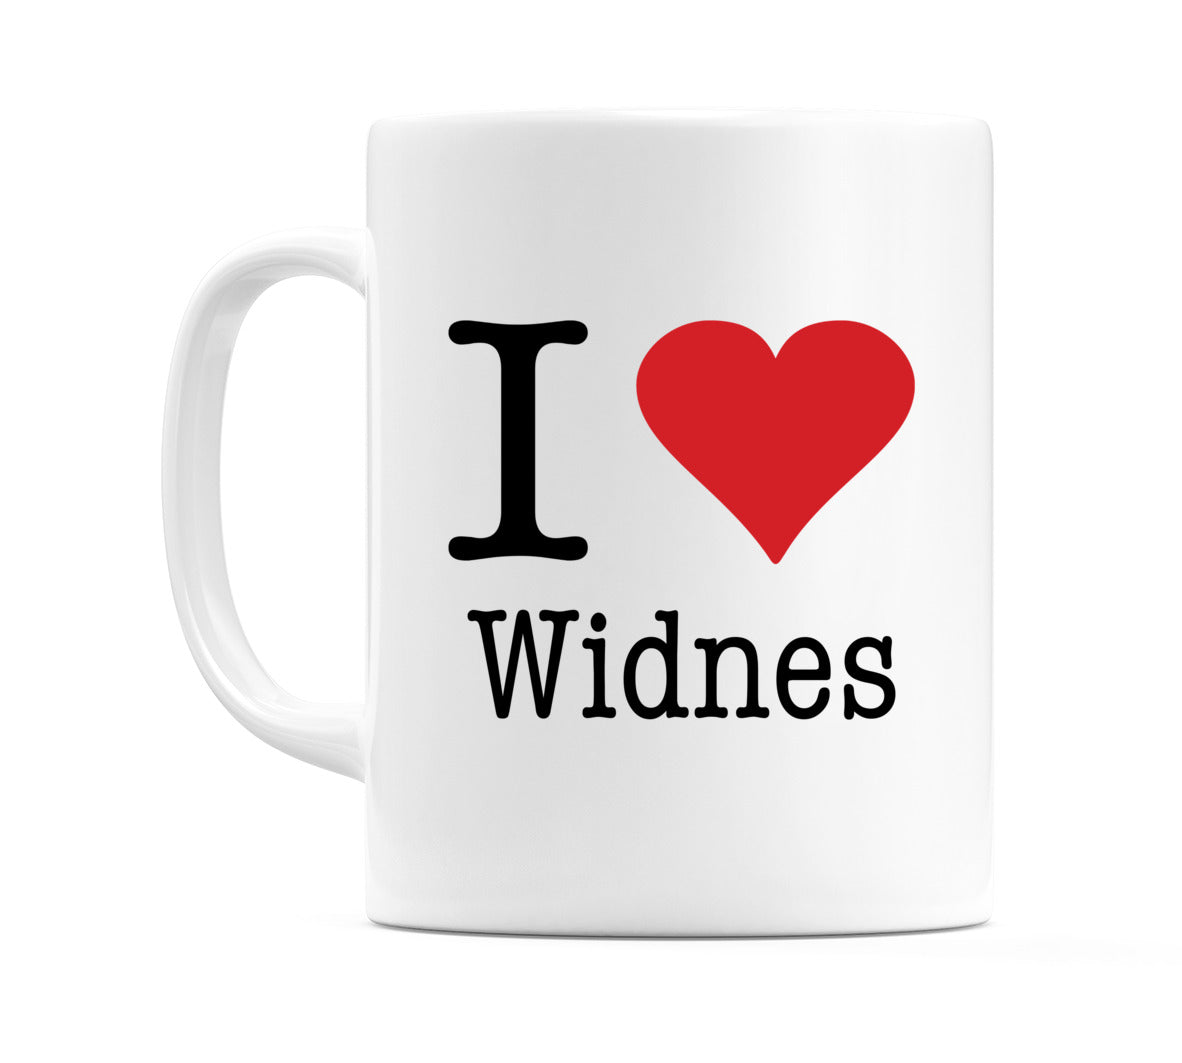 I Love Widnes Mug